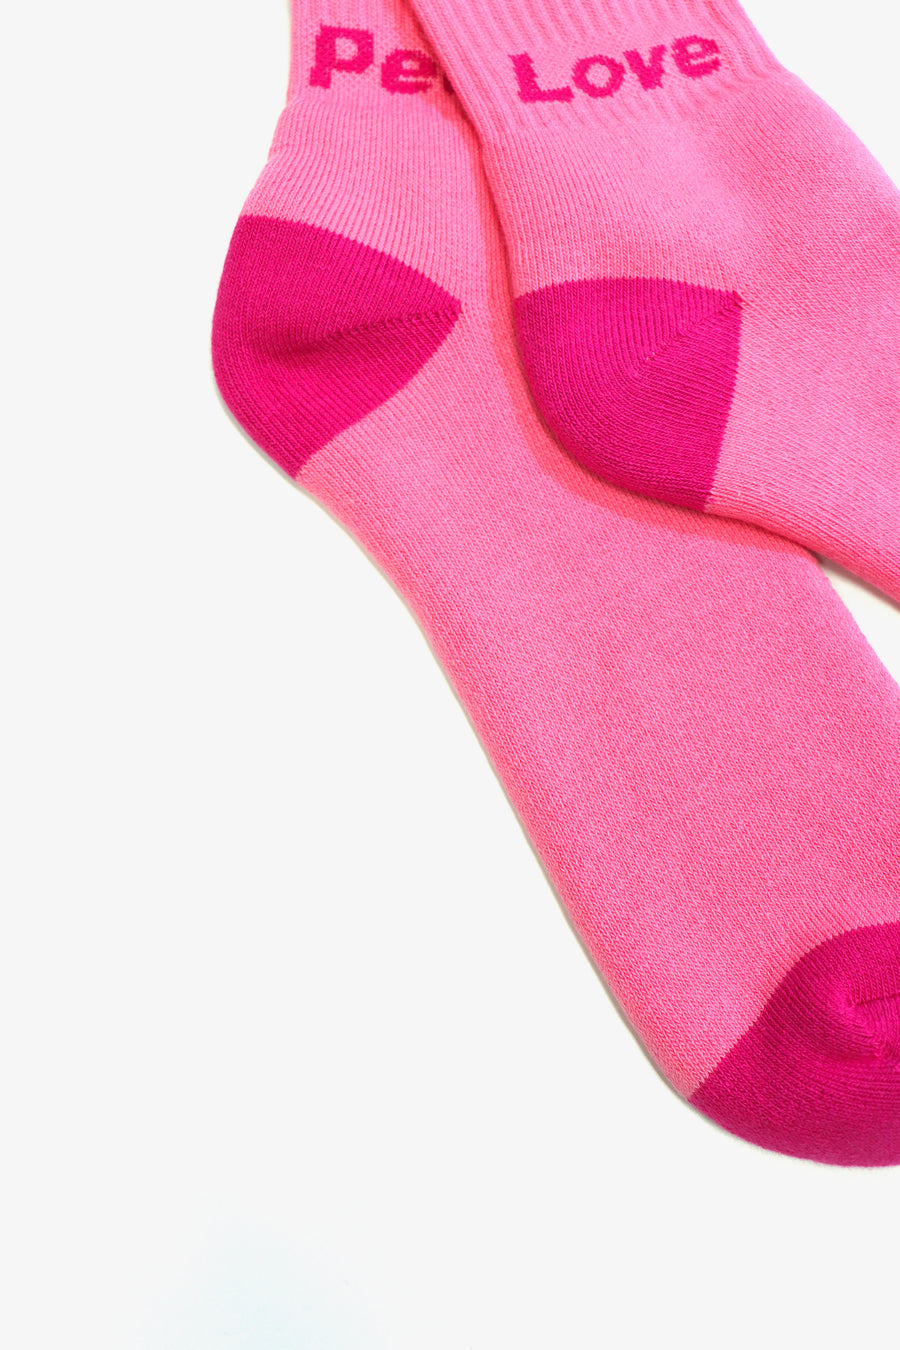 BRU NA BOINNE  Pile Socks Love&Peace(PINK)